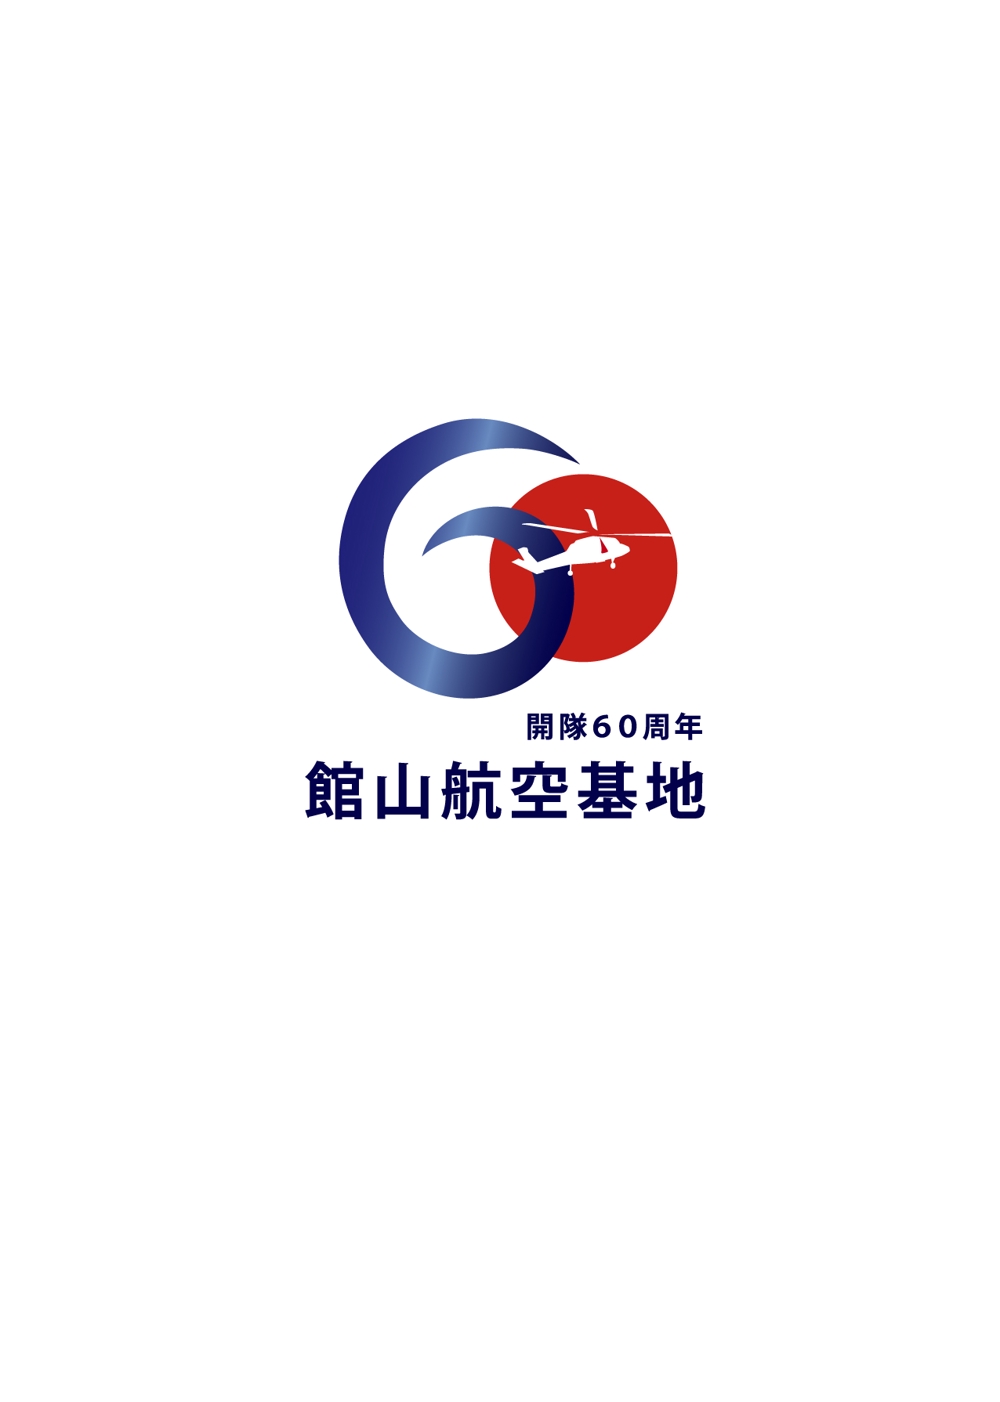 防衛省館山航空基地60周年ロゴ